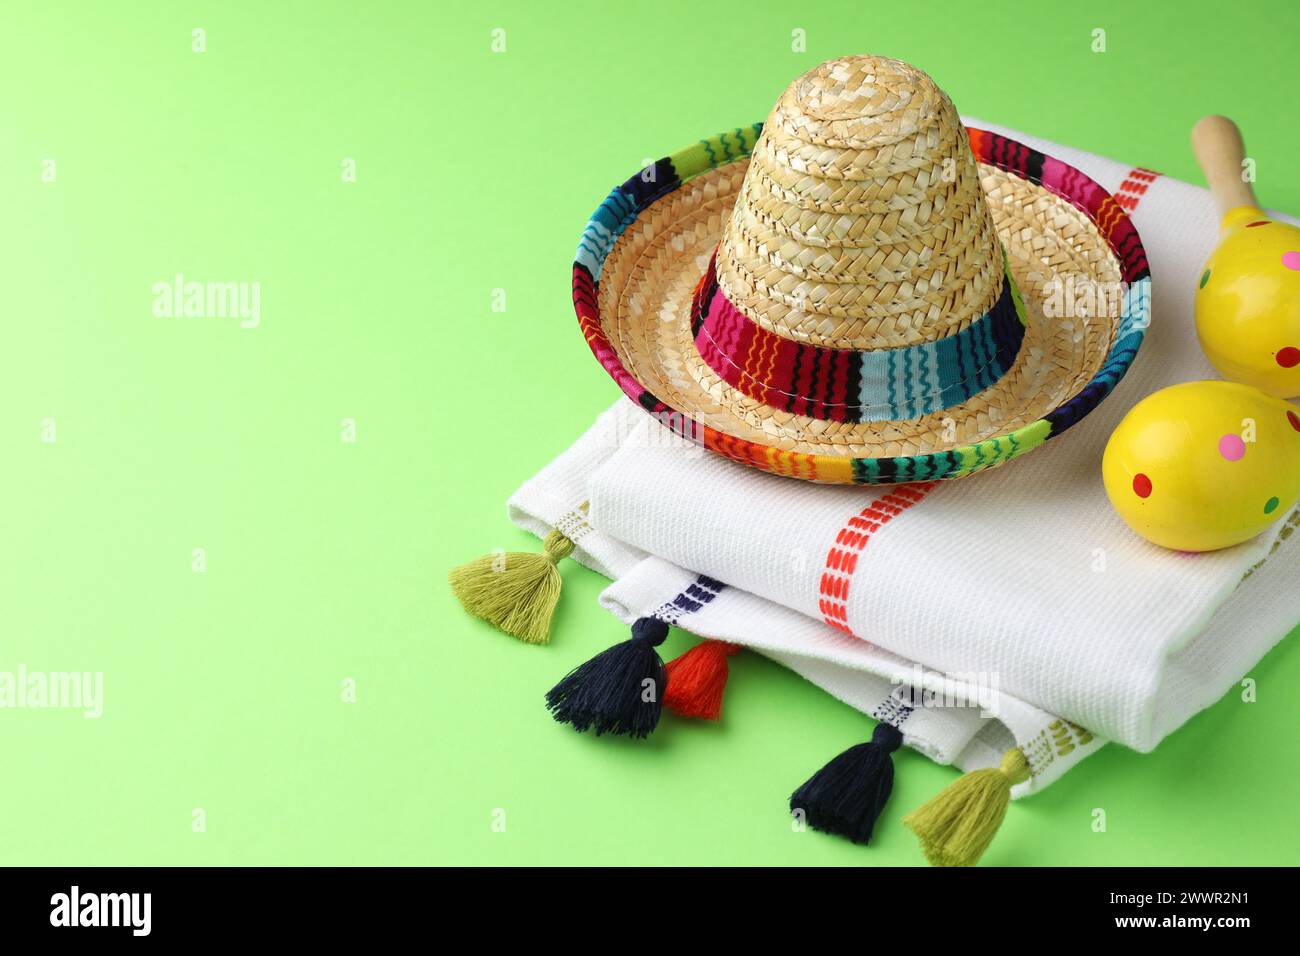 Chapeau sombrero mexicain, maracas et poncho sur fond vert. Espace pour le texte Banque D'Images